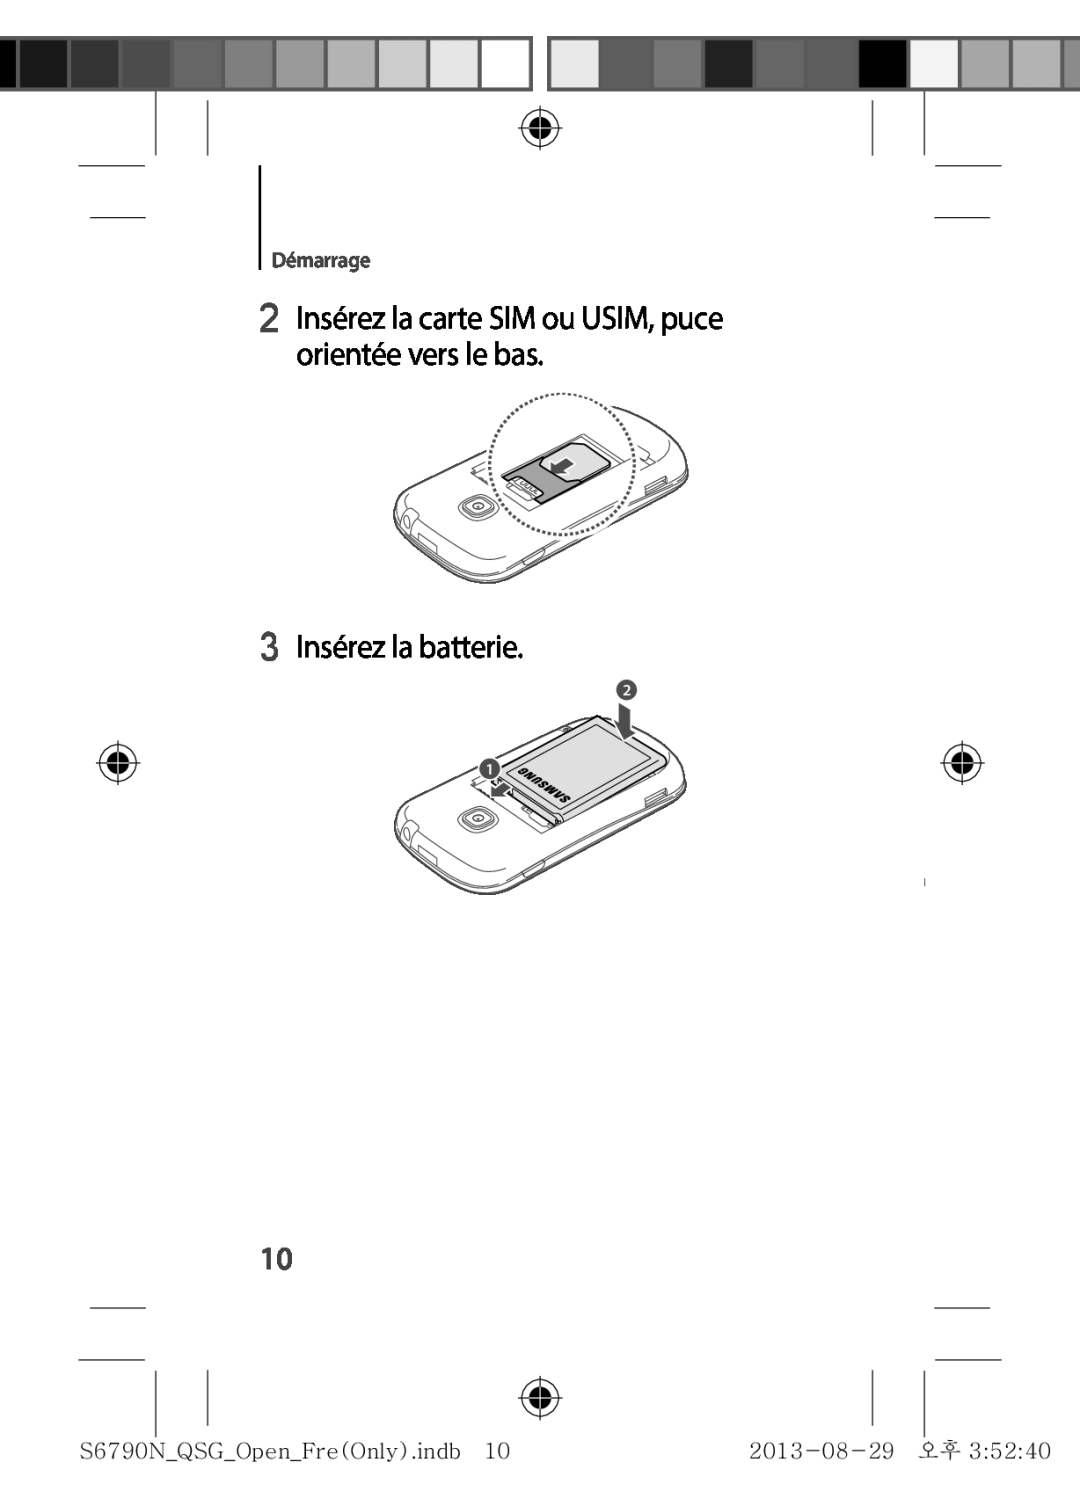 Samsung GT-S6790ZWYXEF manual 2 Insérez la carte SIM ou USIM, puce orientée vers le bas, 3 Insérez la batterie, Démarrage 